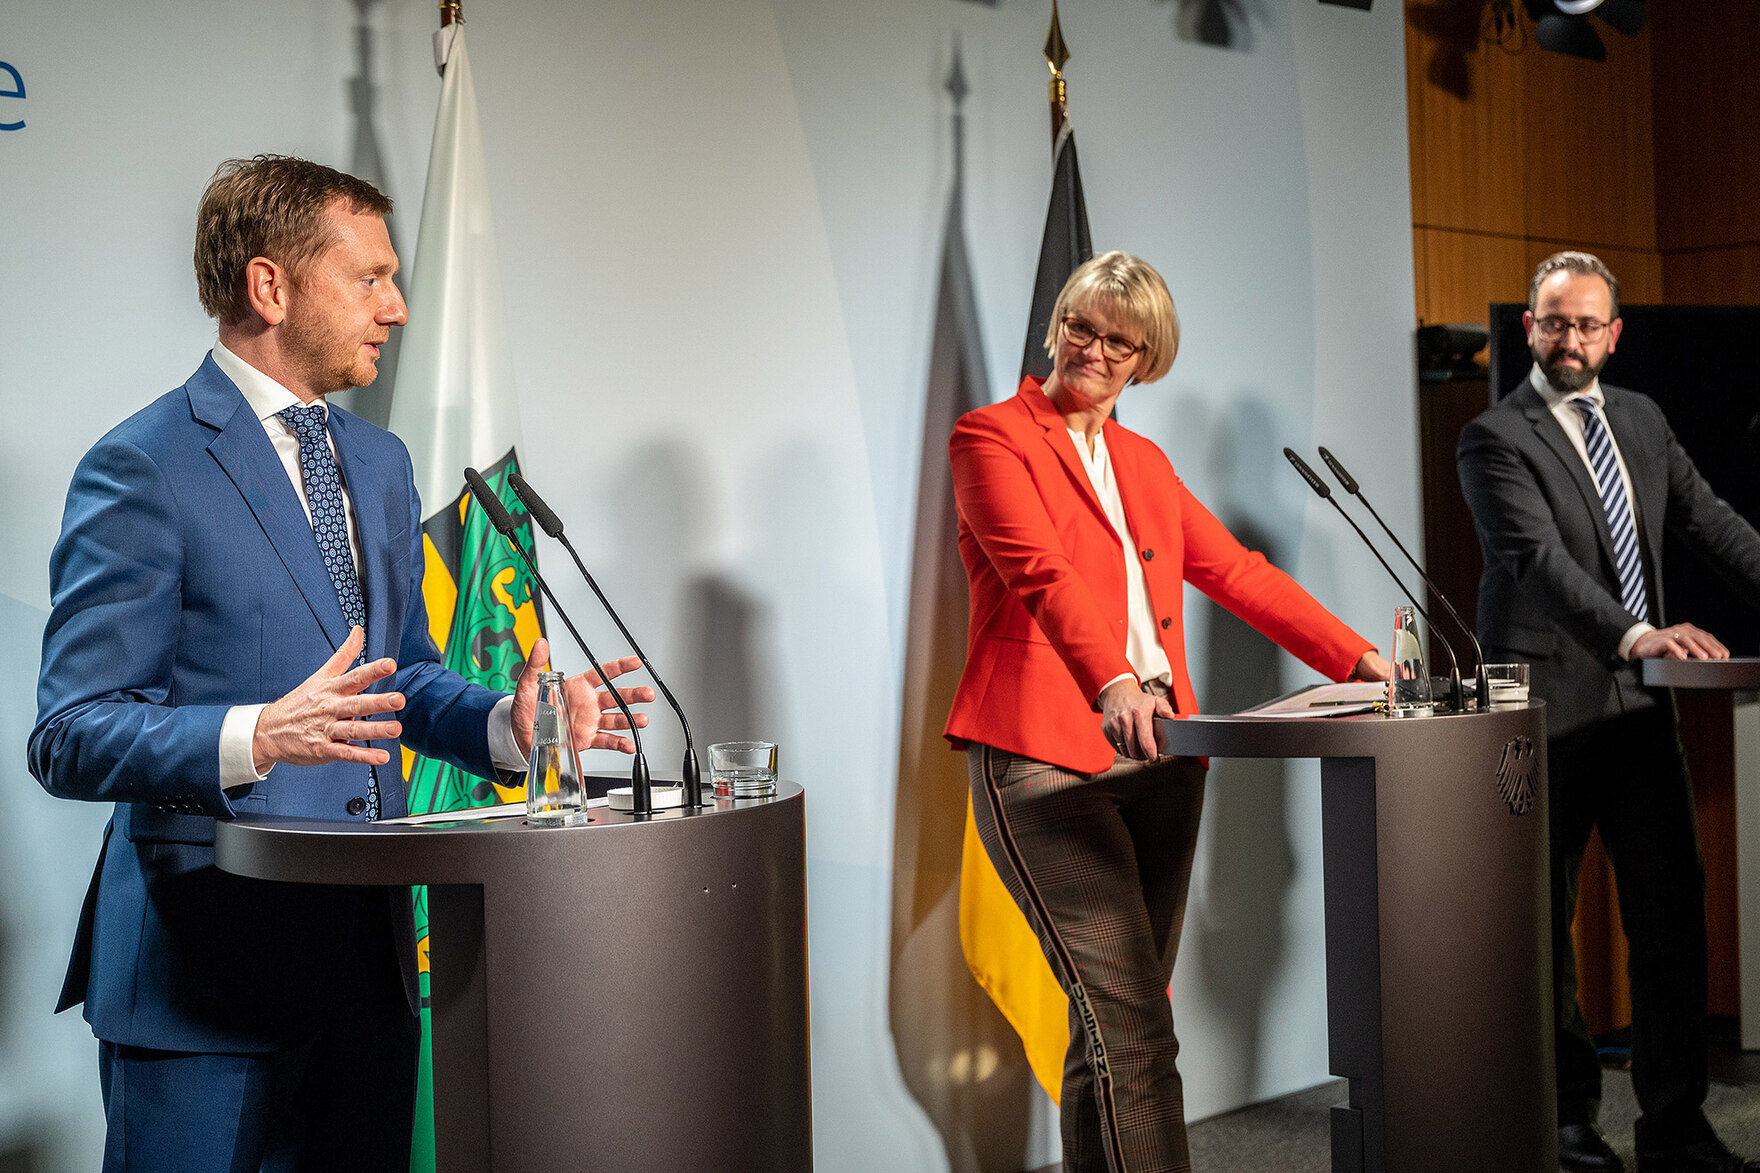 Zwei Männer und eine Frau stehen an Rednerpulten. Einer der Männer spricht und gestikuliert. Im Hintergrund stehen Fahnen des Freistaates Sachsen und der Bundesrepublik Deutschland.